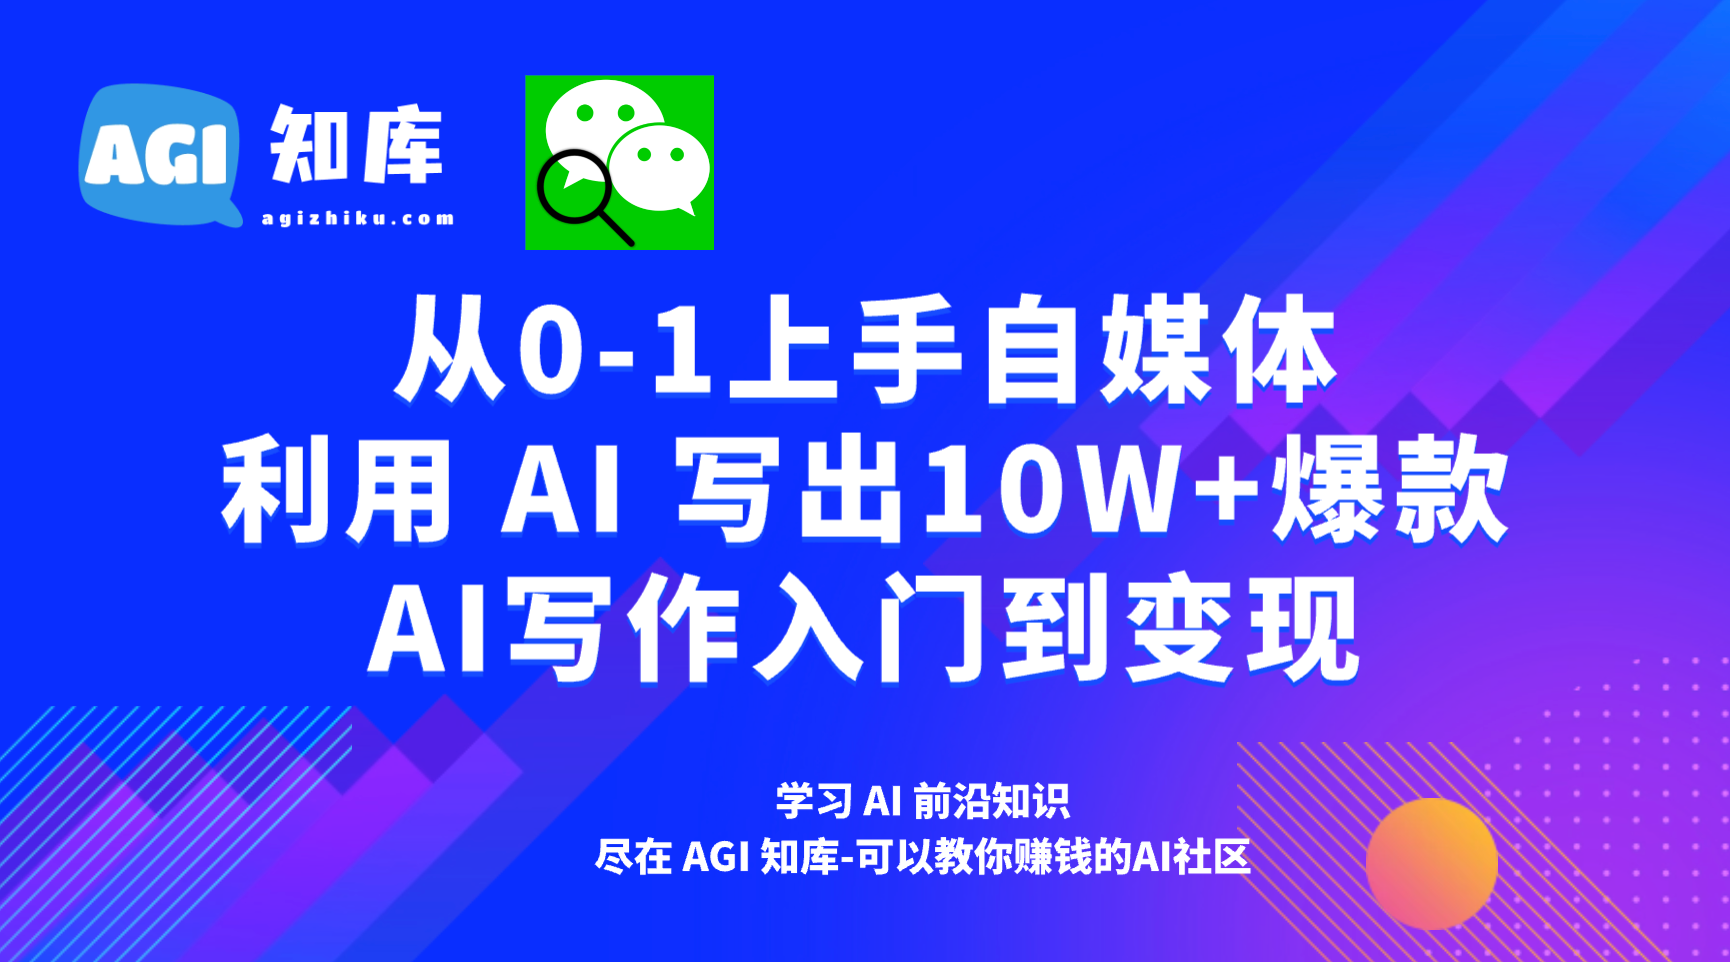 AI公众号写作39：一篇搞定流量主爆文选题-AGI智库-全国最大的AI智库社区 | AI导航 | AI学习网站